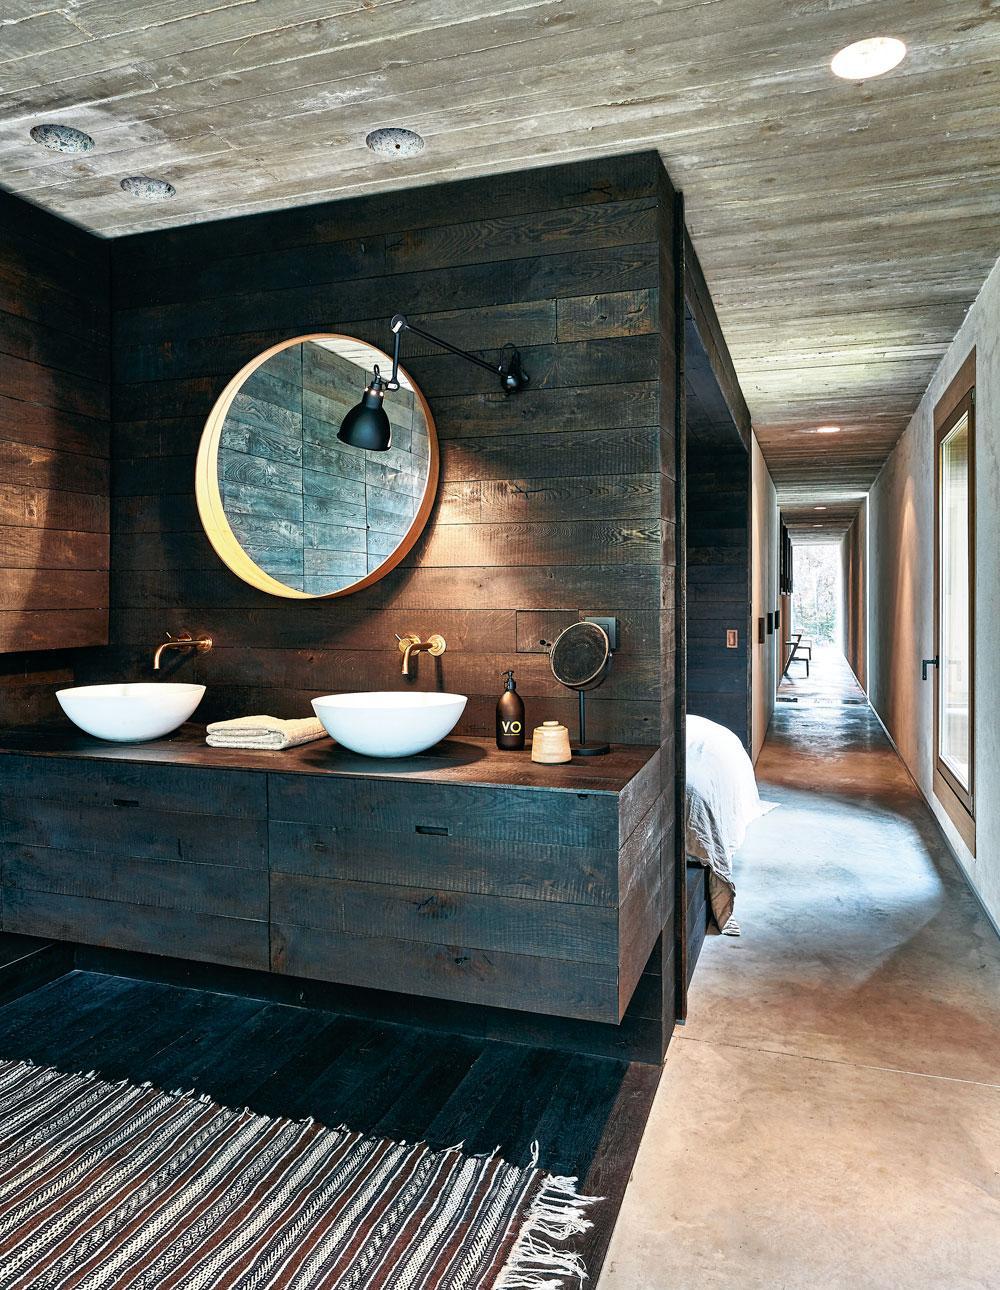 Zwart eikenhout kreeg een prominente rol in de bad- en slaapkamer.